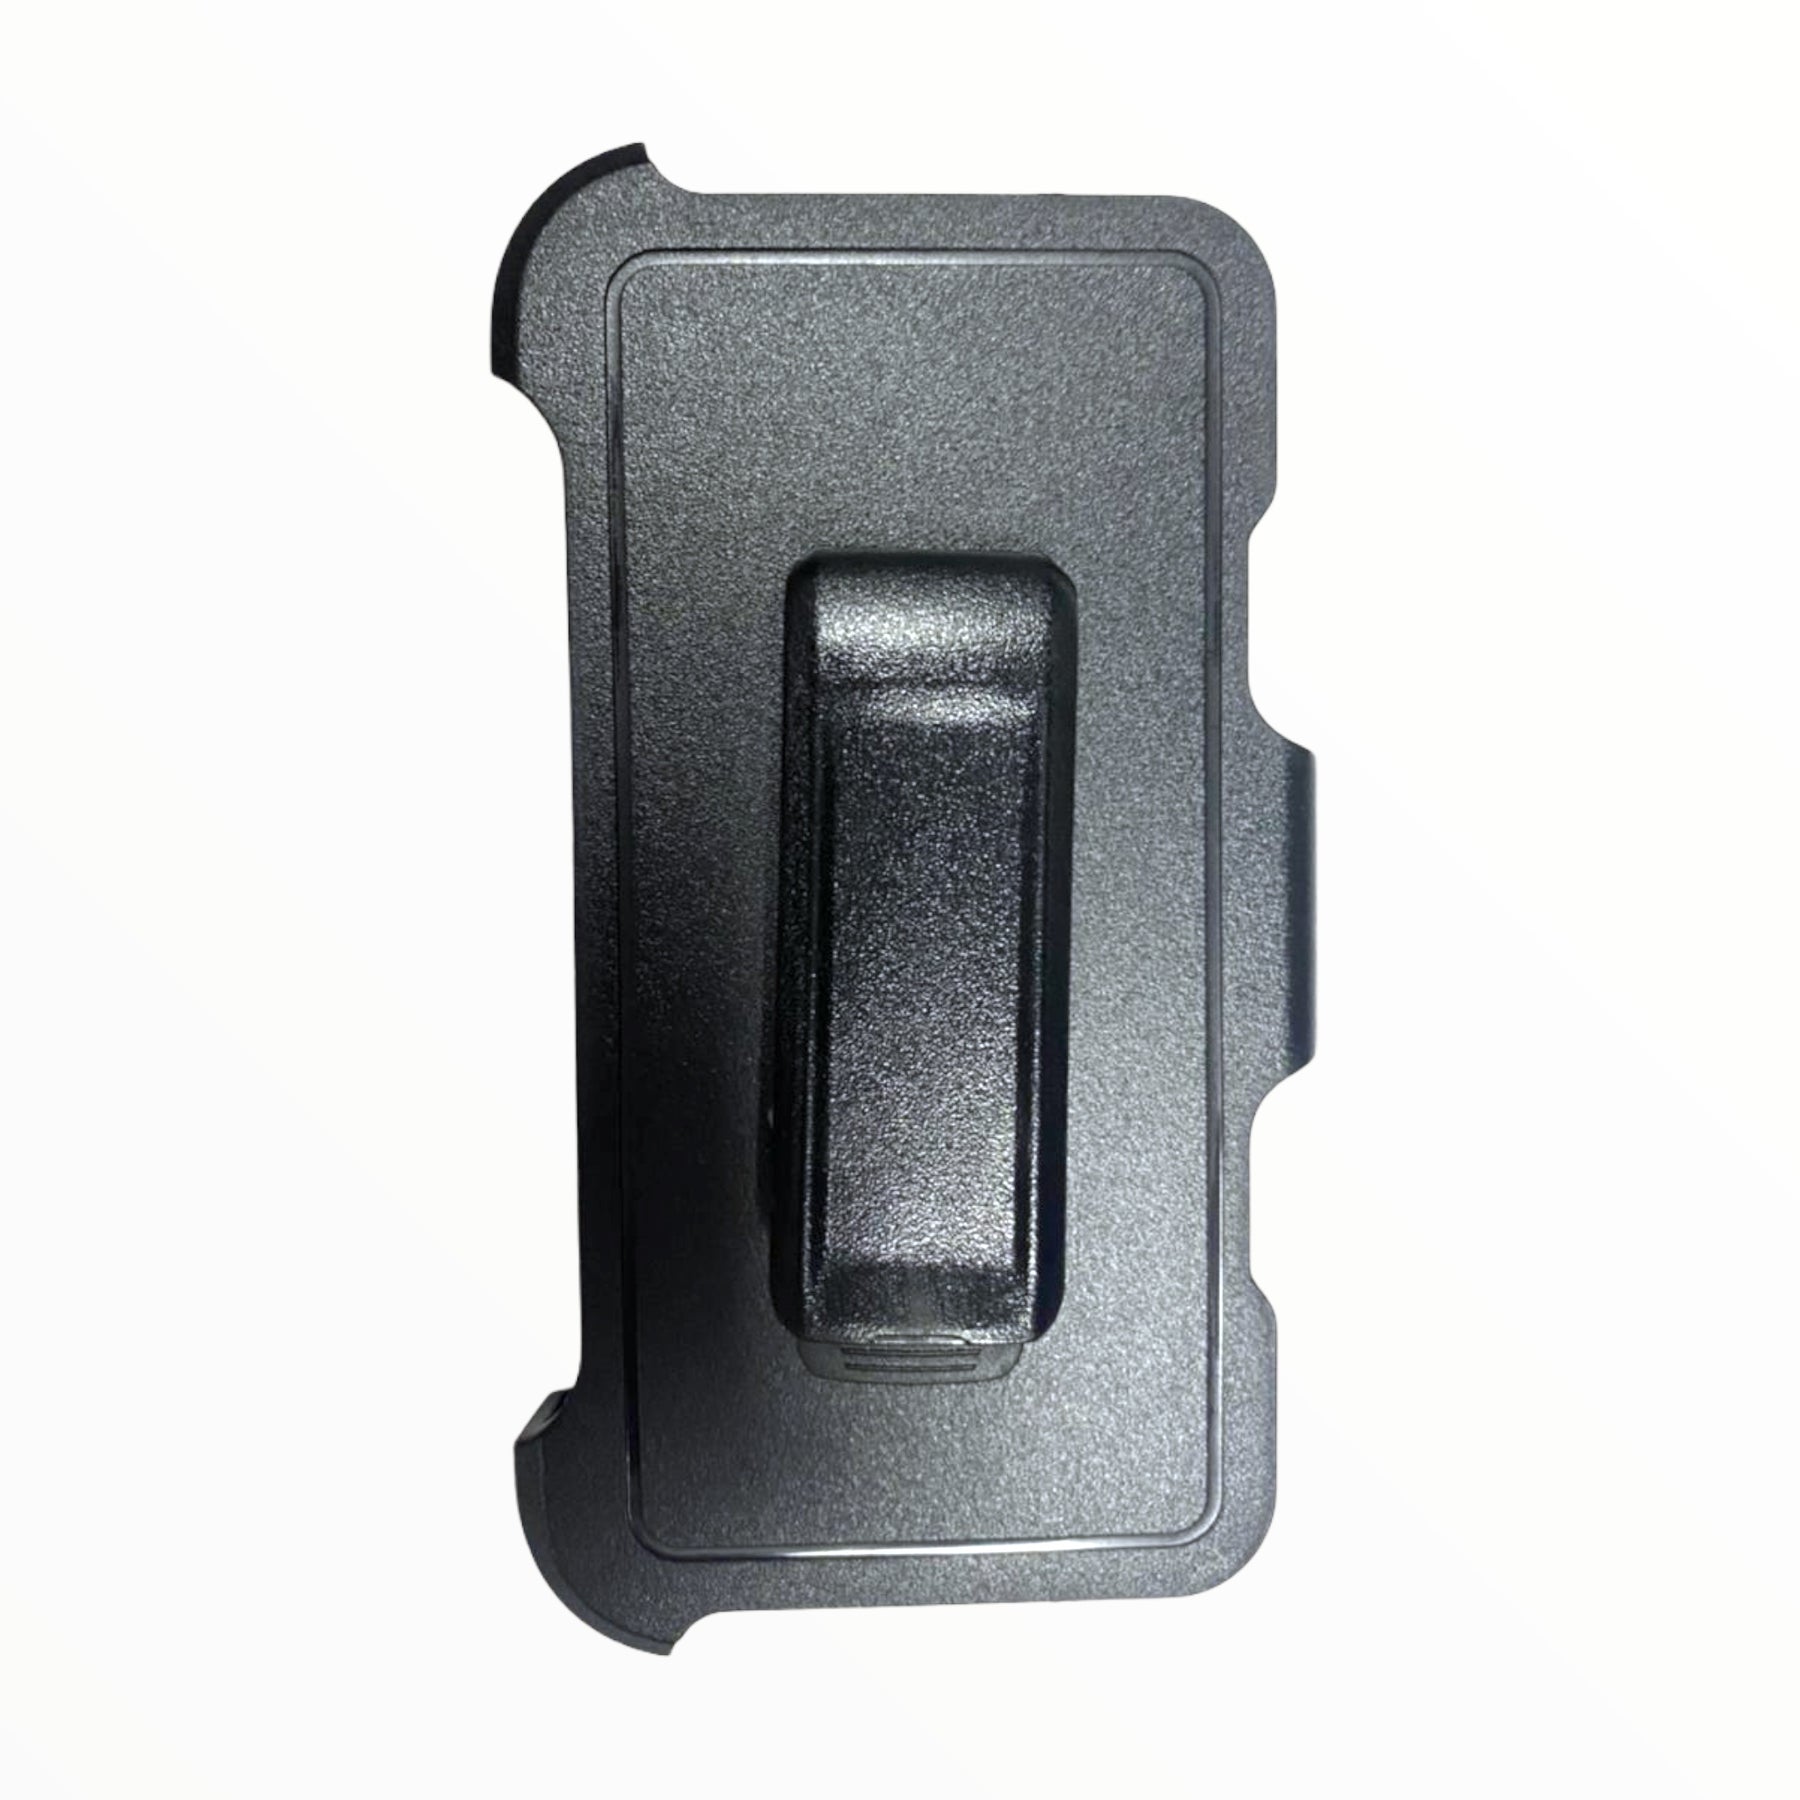 Accesorio el rey clip para estuches otterbox o defender iphone 7 / 8 / se 2020 color negro